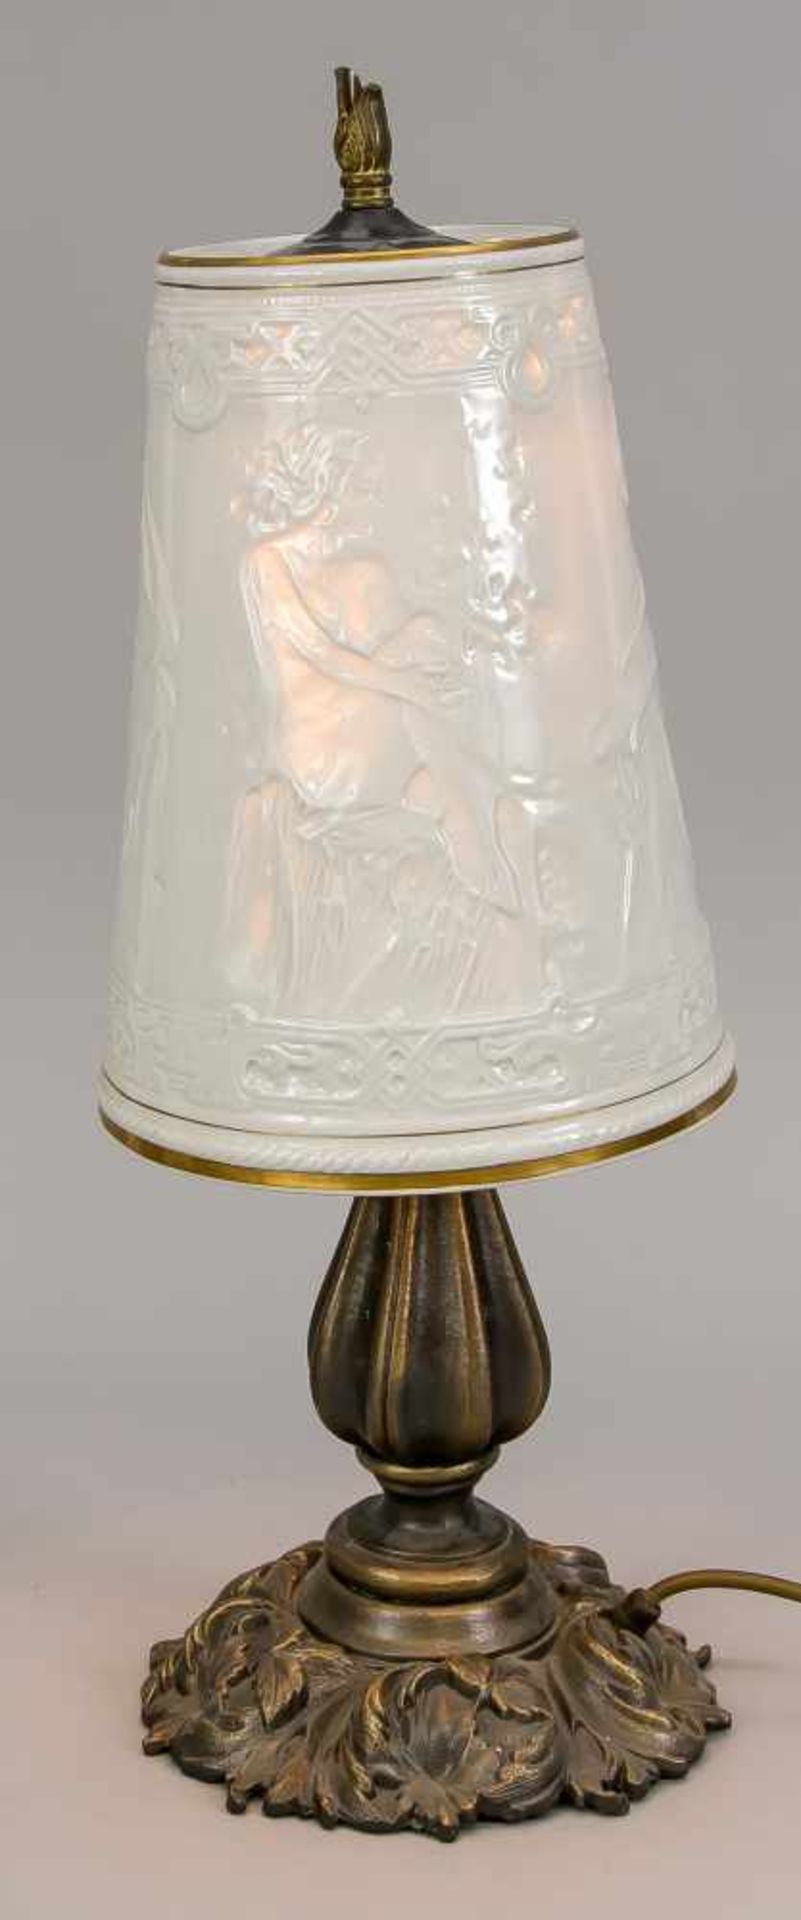 Lampe mit Lithophanie-Schirm, 20. Jh., Sockel und Schaft aus Metallguss. Runder, sich nach